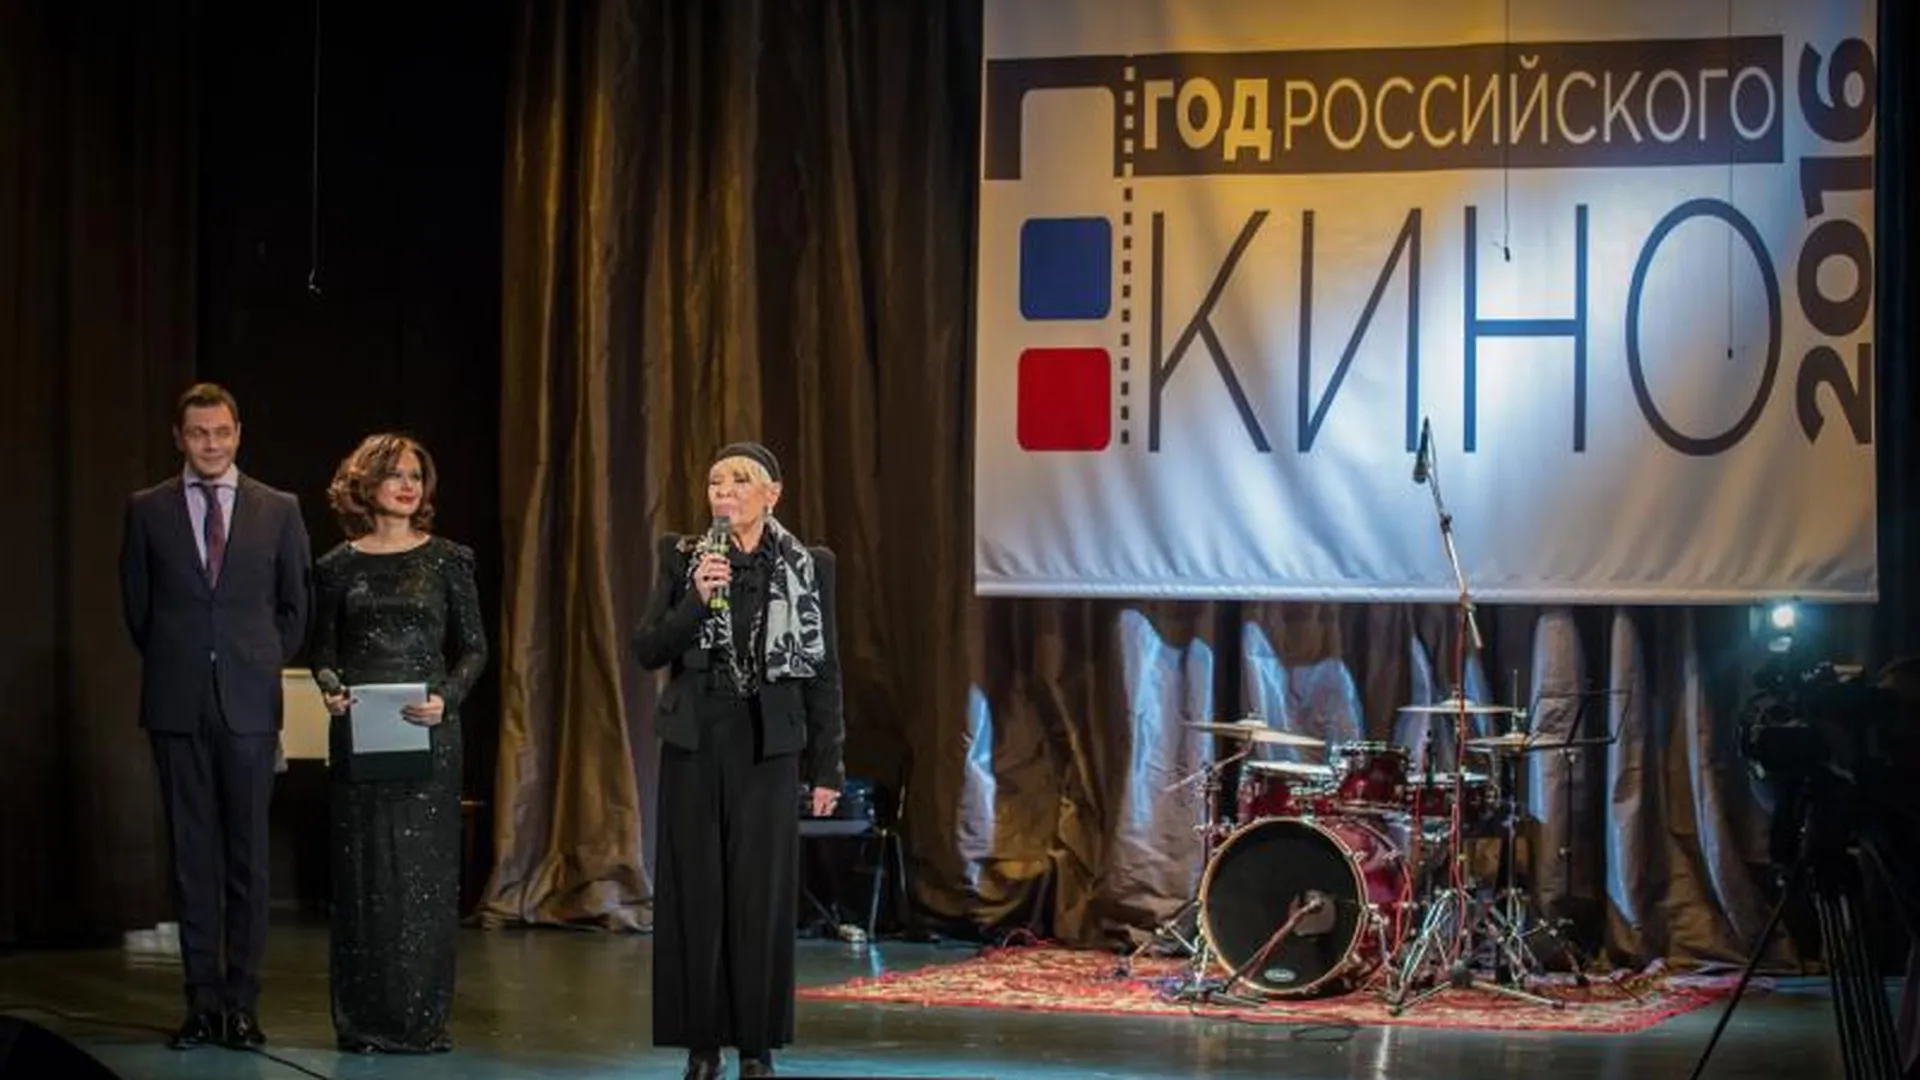 Более 2000 фестивалей, концертов и творческих встреч пройдут в МО в Год российского кино